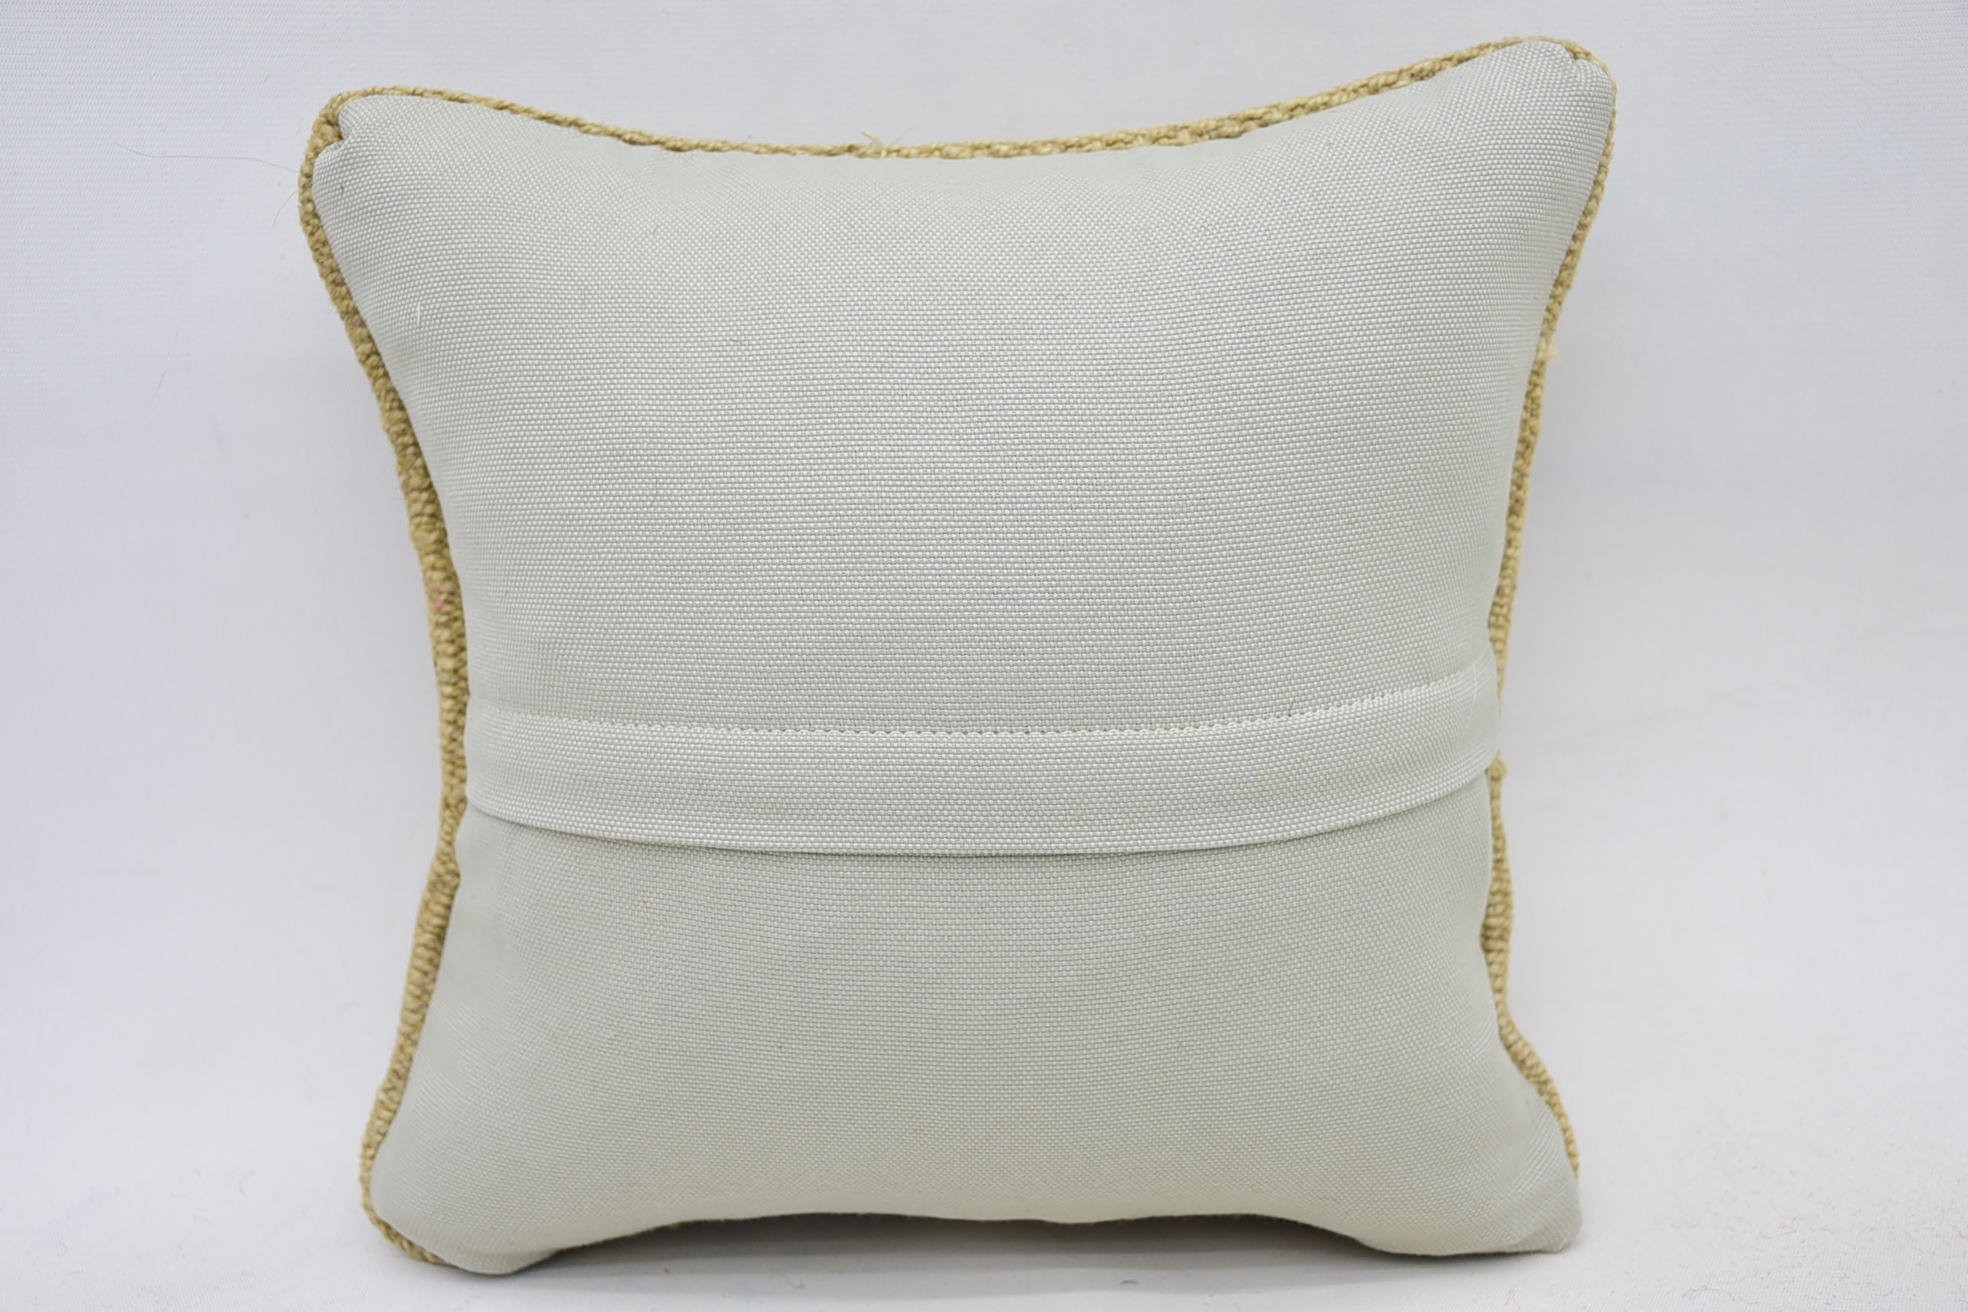 Wholesale Cushion, Floor Pillow Case, Handmade Kilim Cushion, Bed Cushion, 12"x12" Yellow Pillow Sham, Antique Pillows, Kilim Pillow Cover